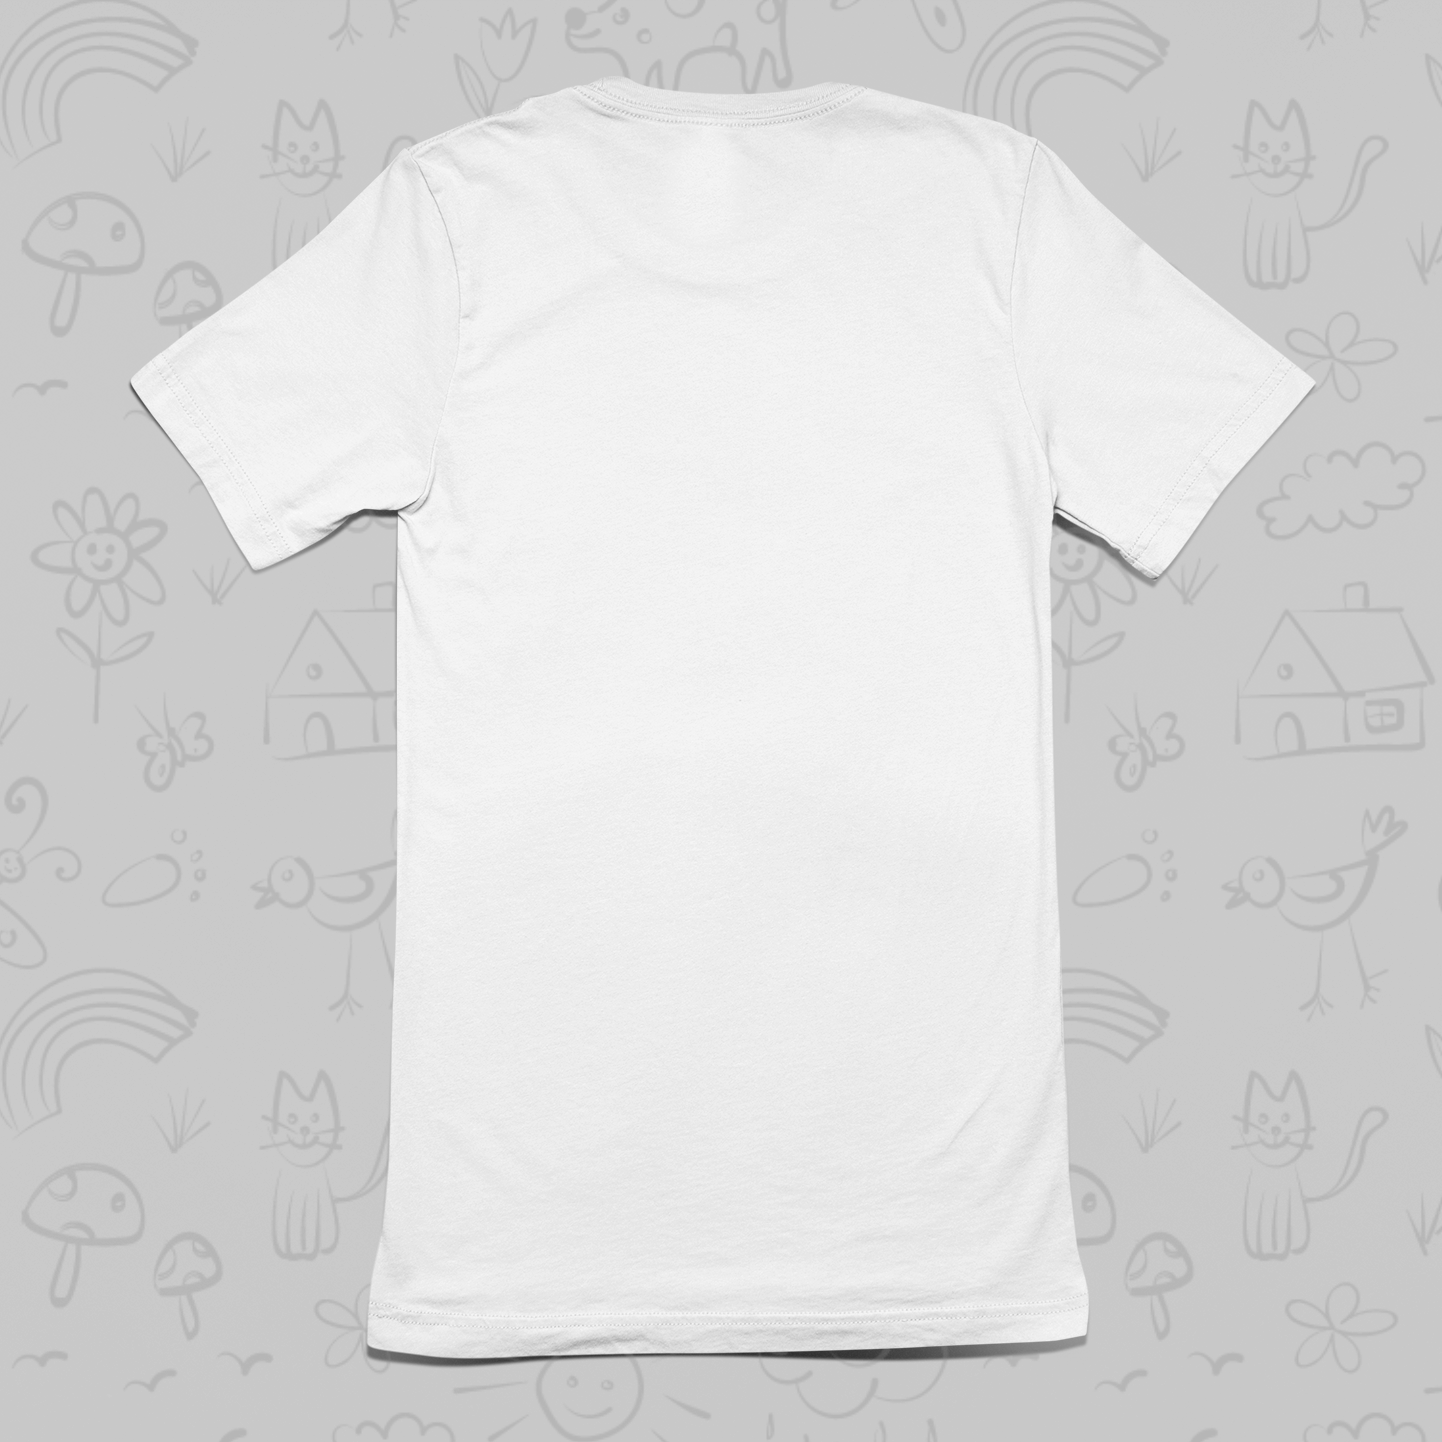 Hug Dealer Round Neck Cotton T-Shirt - White